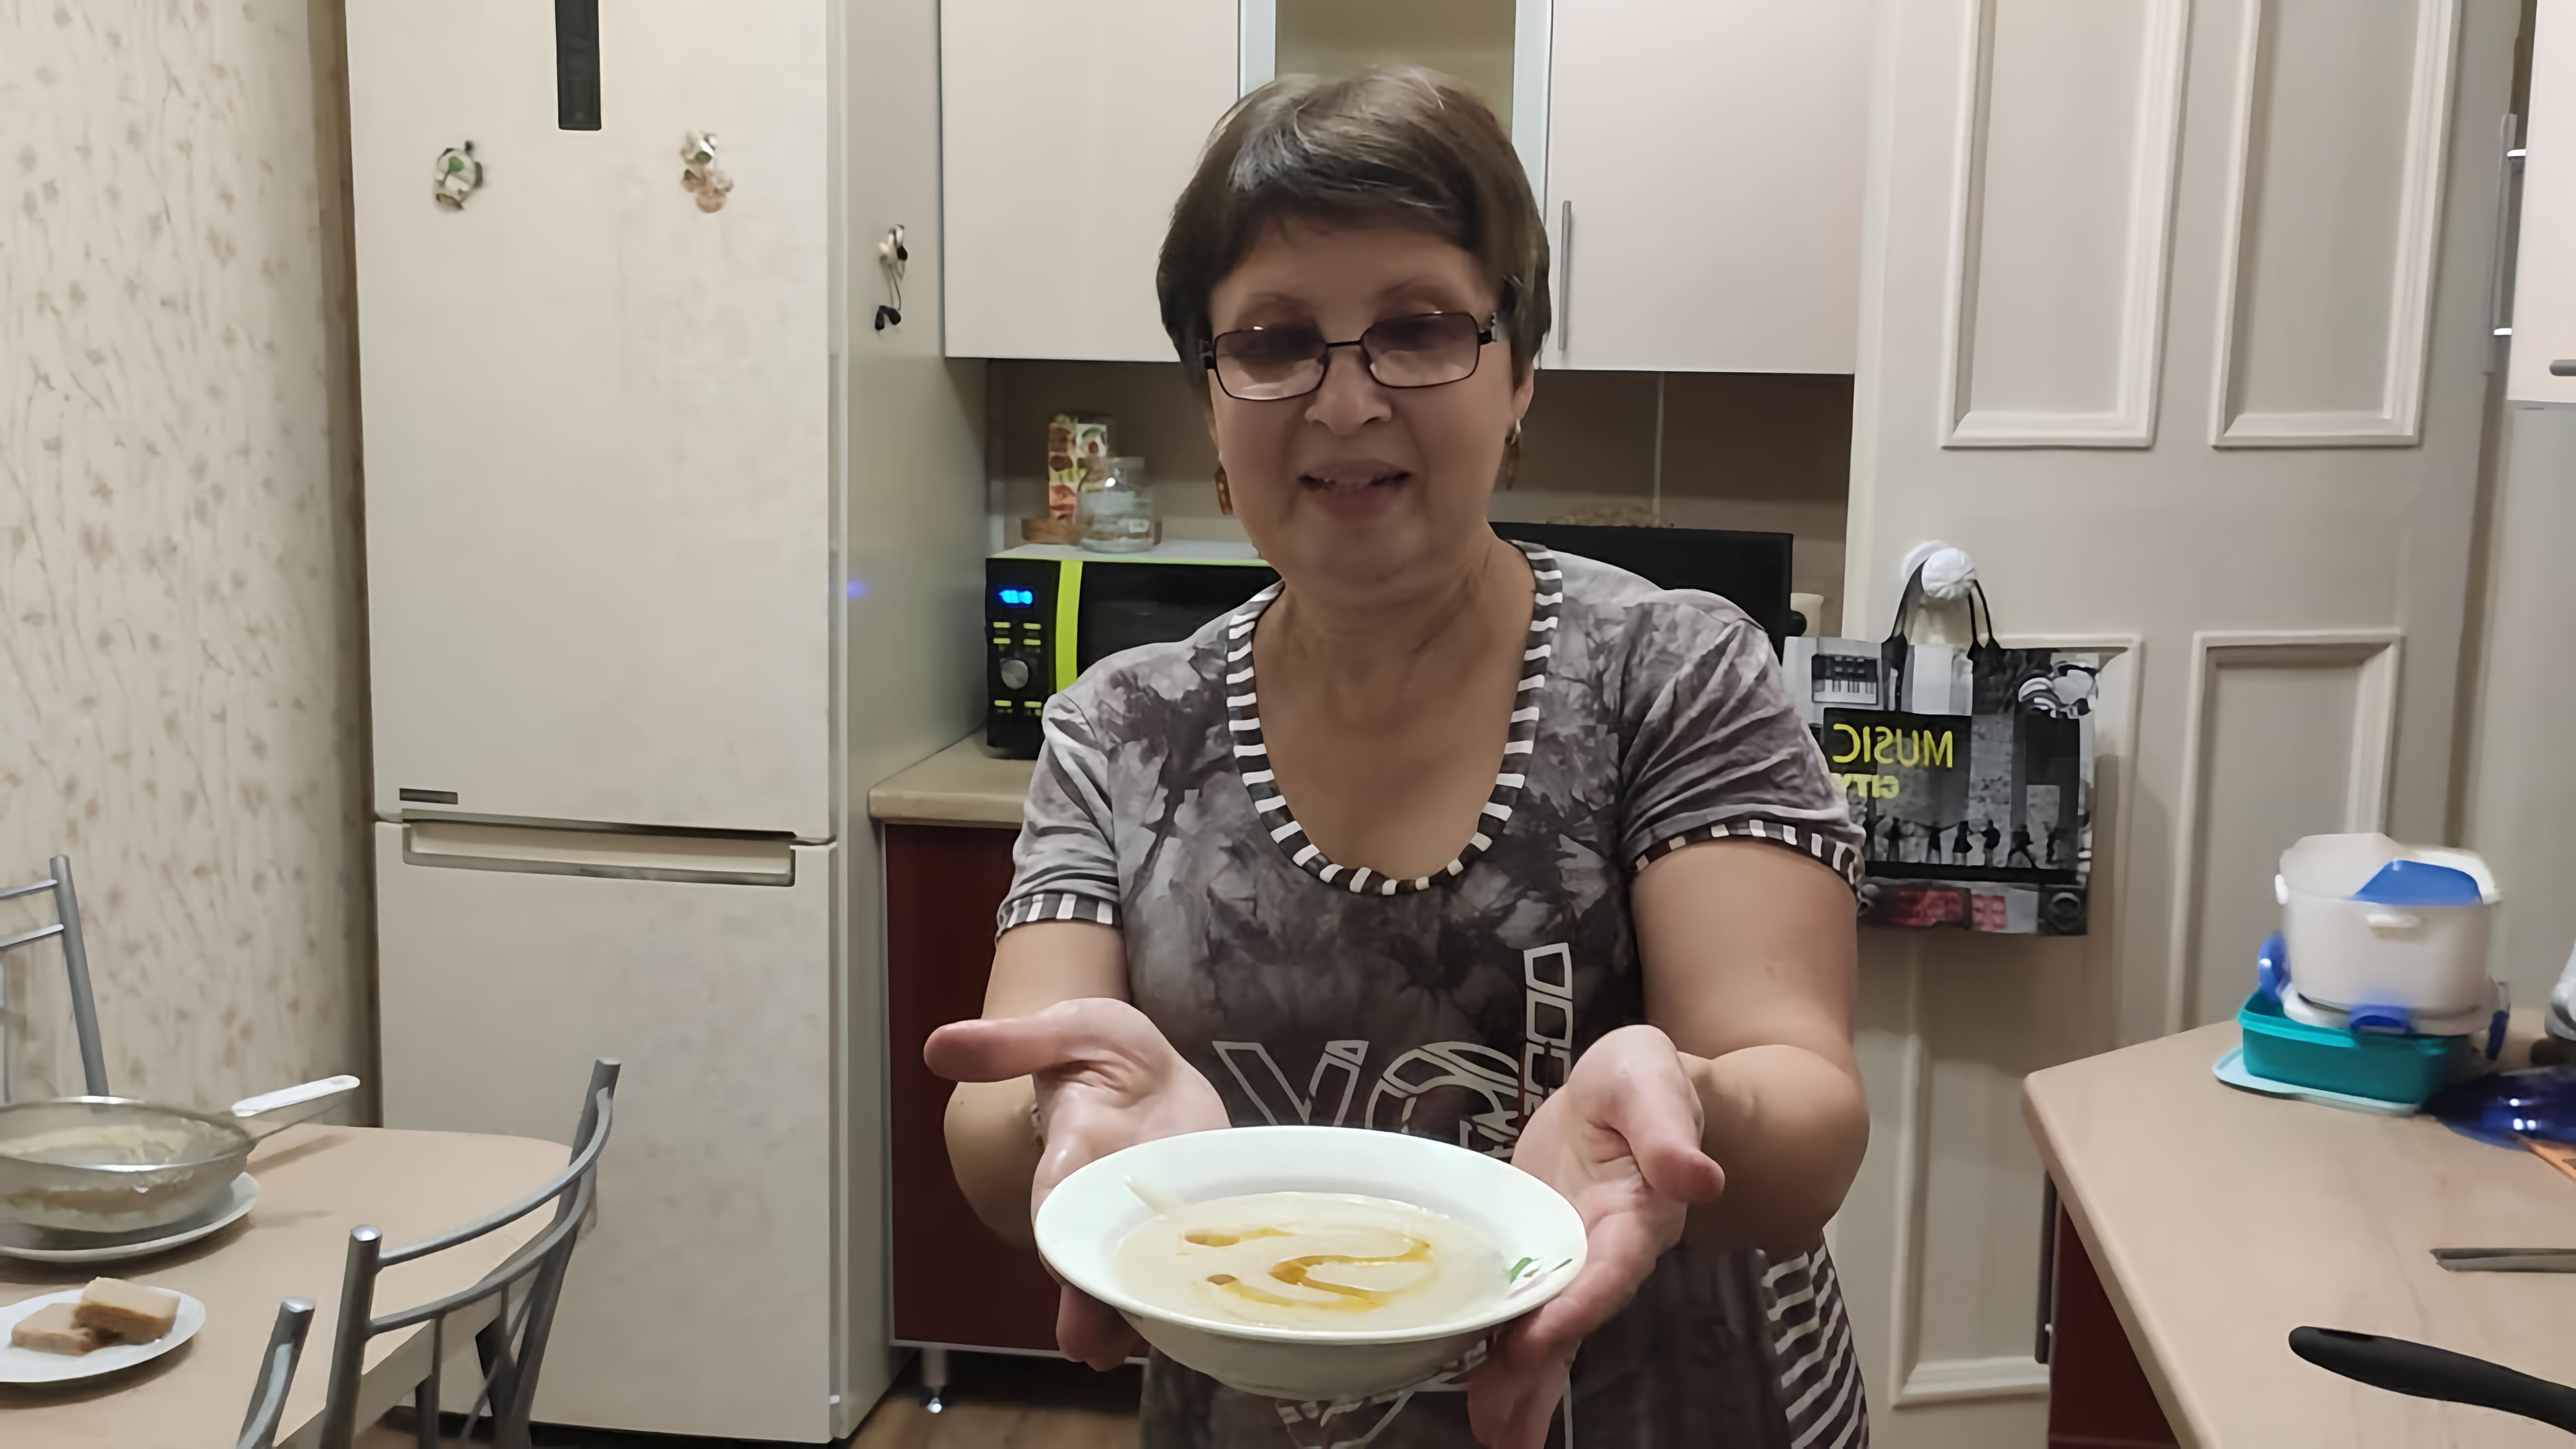 В этом видео демонстрируется рецепт приготовления овсяного киселя по бабушкиному рецепту